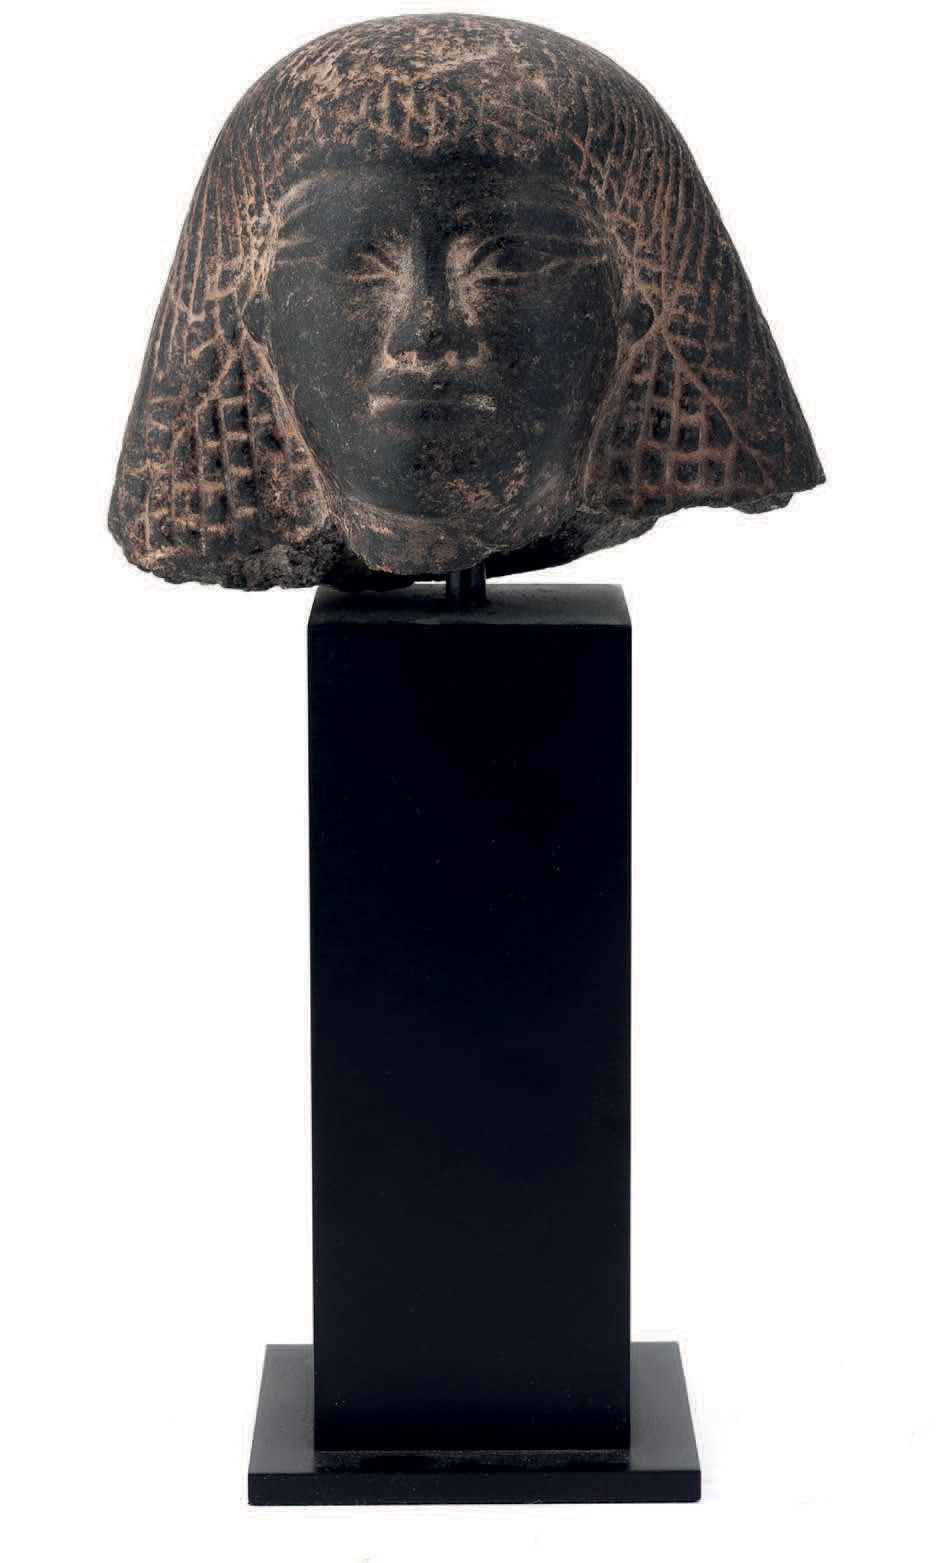 EGYPTE, Nouvel Empire (1552- 1070 av. J.-C.) 一个男人的头从雕像中走出来。
一个两部分的假发，上部由长发组成，下部由&hellip;